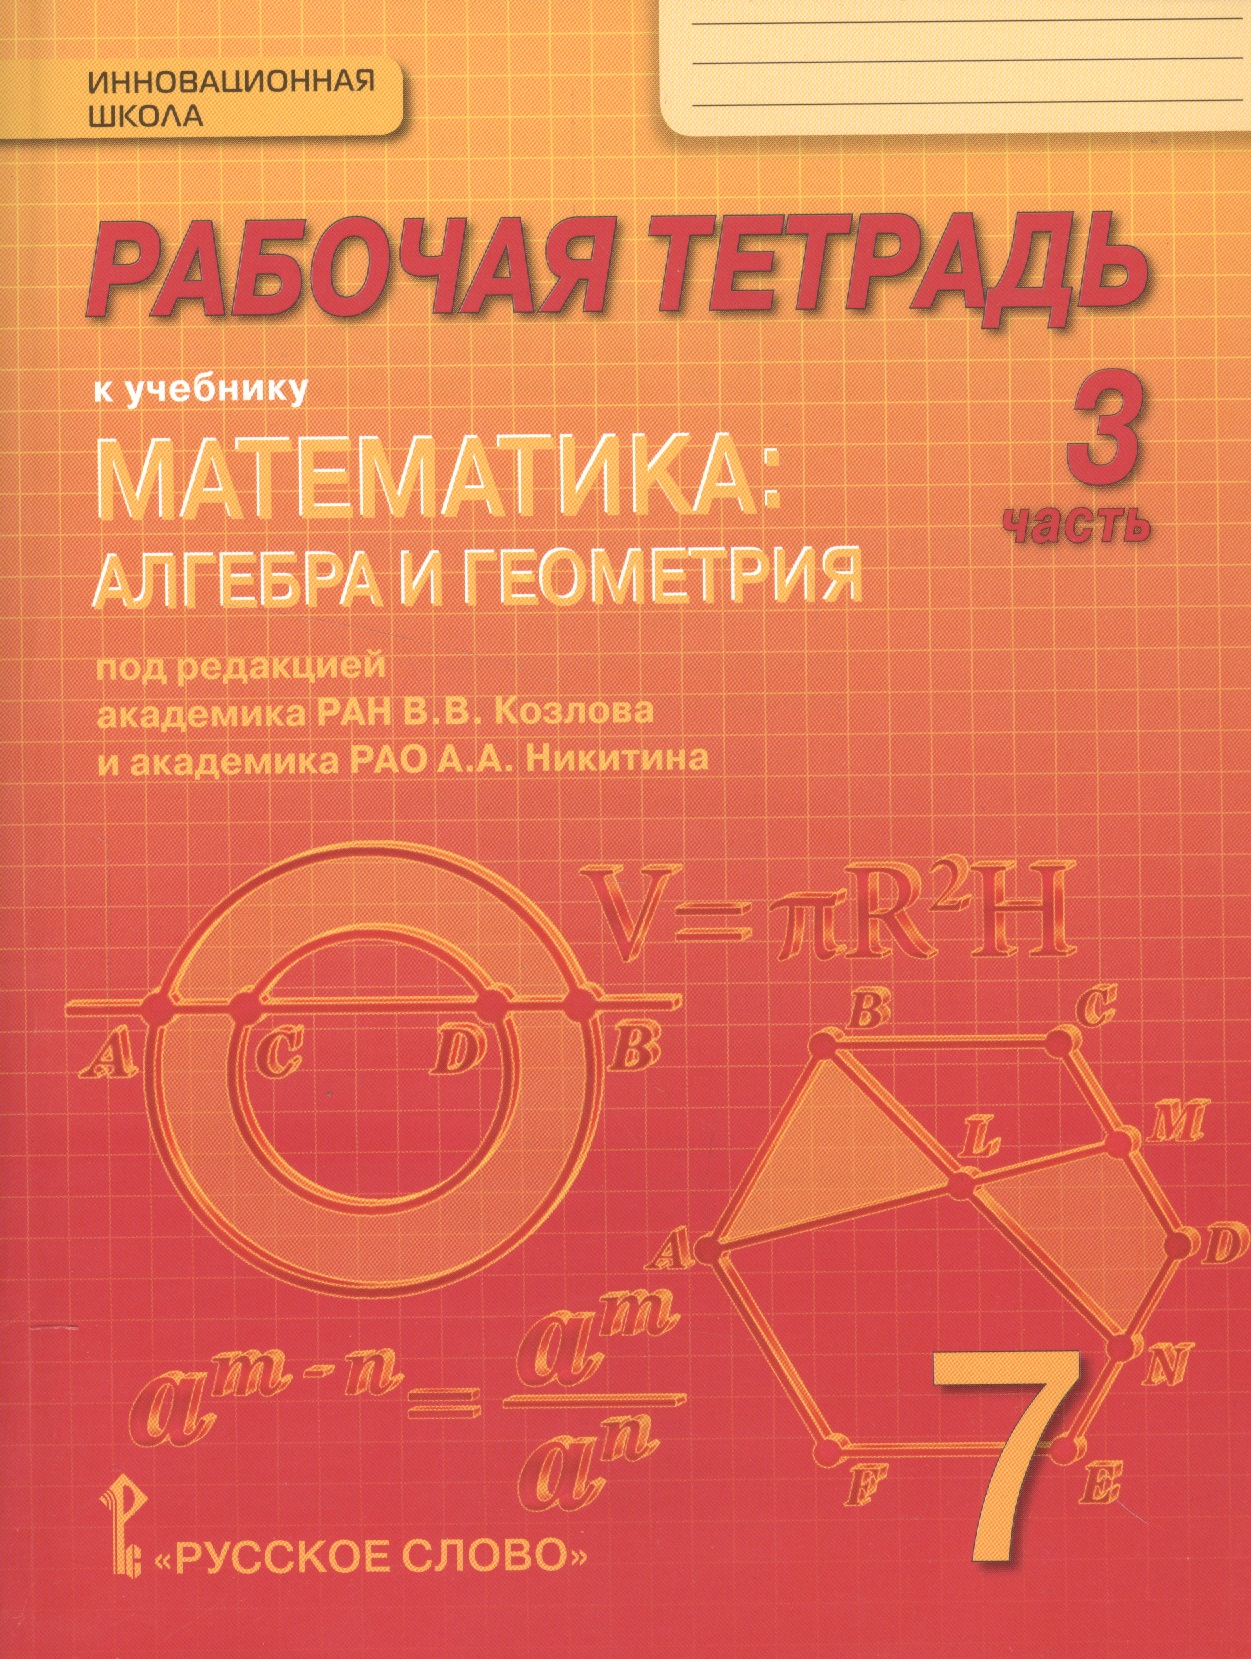 None Рабочая тетрадь к учебнику Математика: алгебра и геометрия. 7 класс, 3 часть